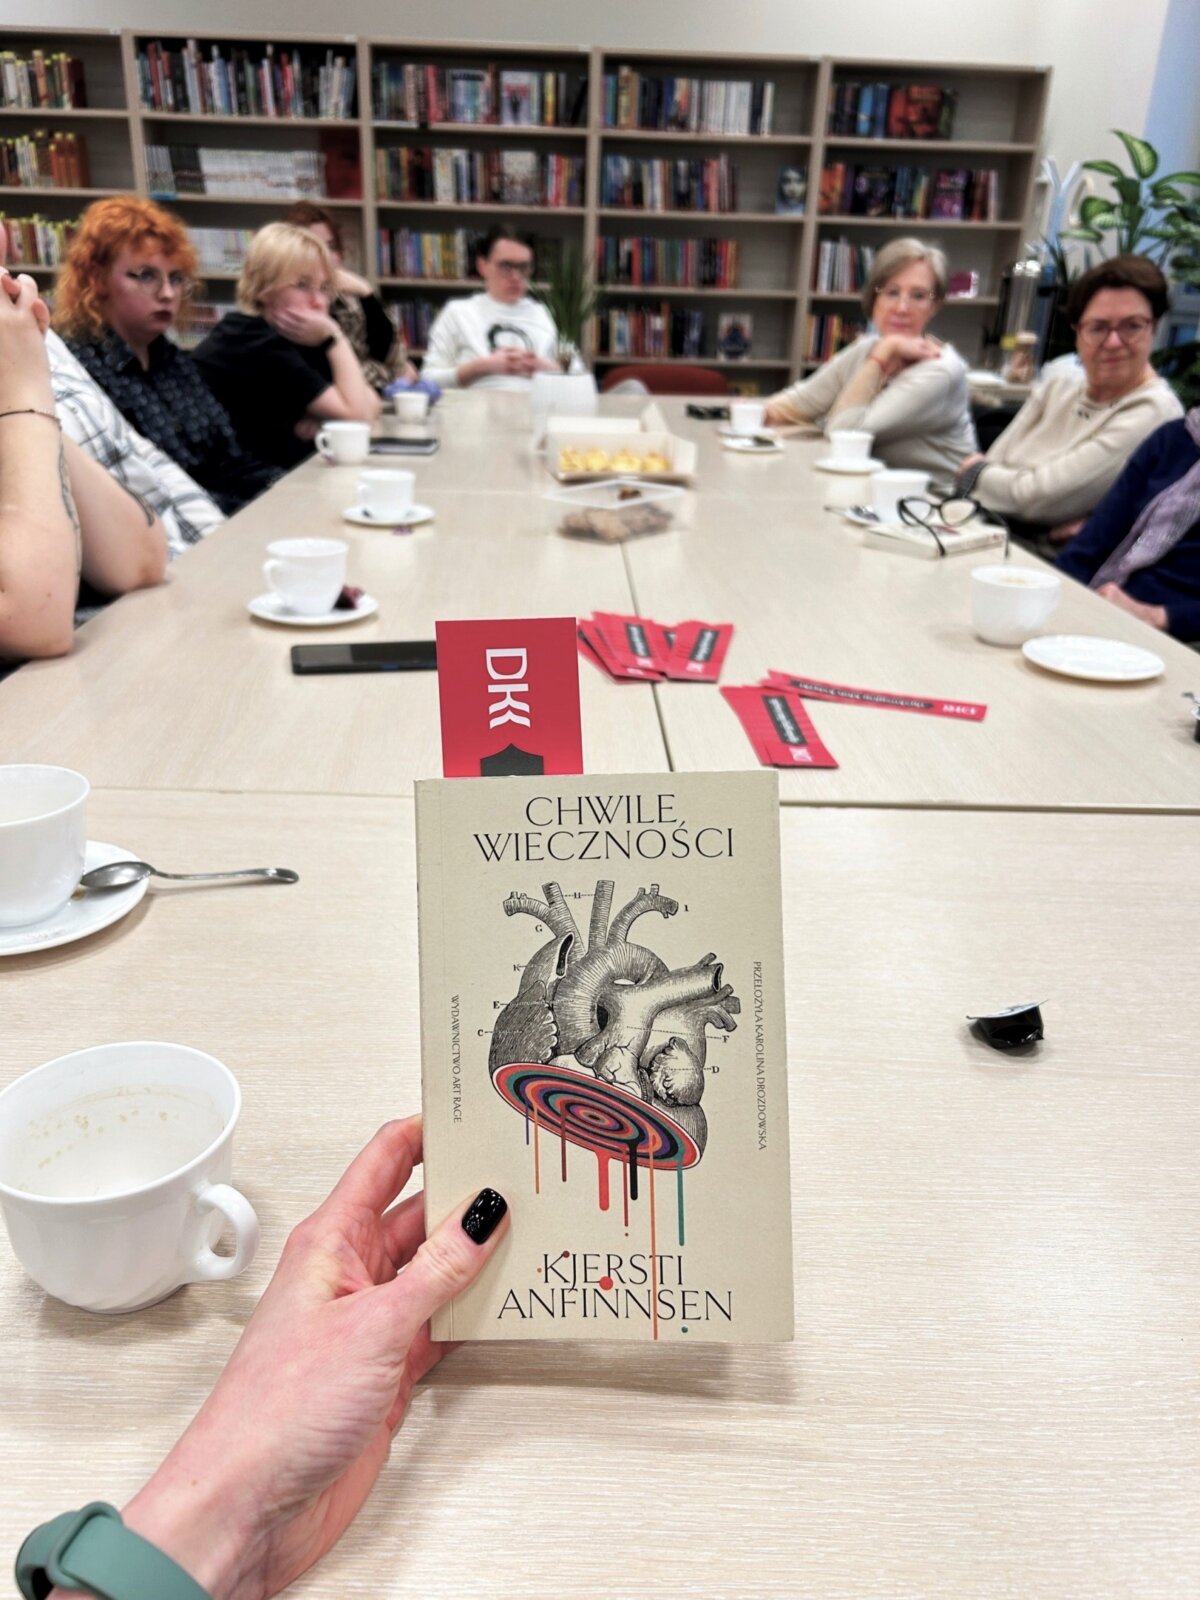 Pokazana jest okładka książki, a w tle widać siedzące przy stole osoby, które biorą udział w spotkaniu DKK.